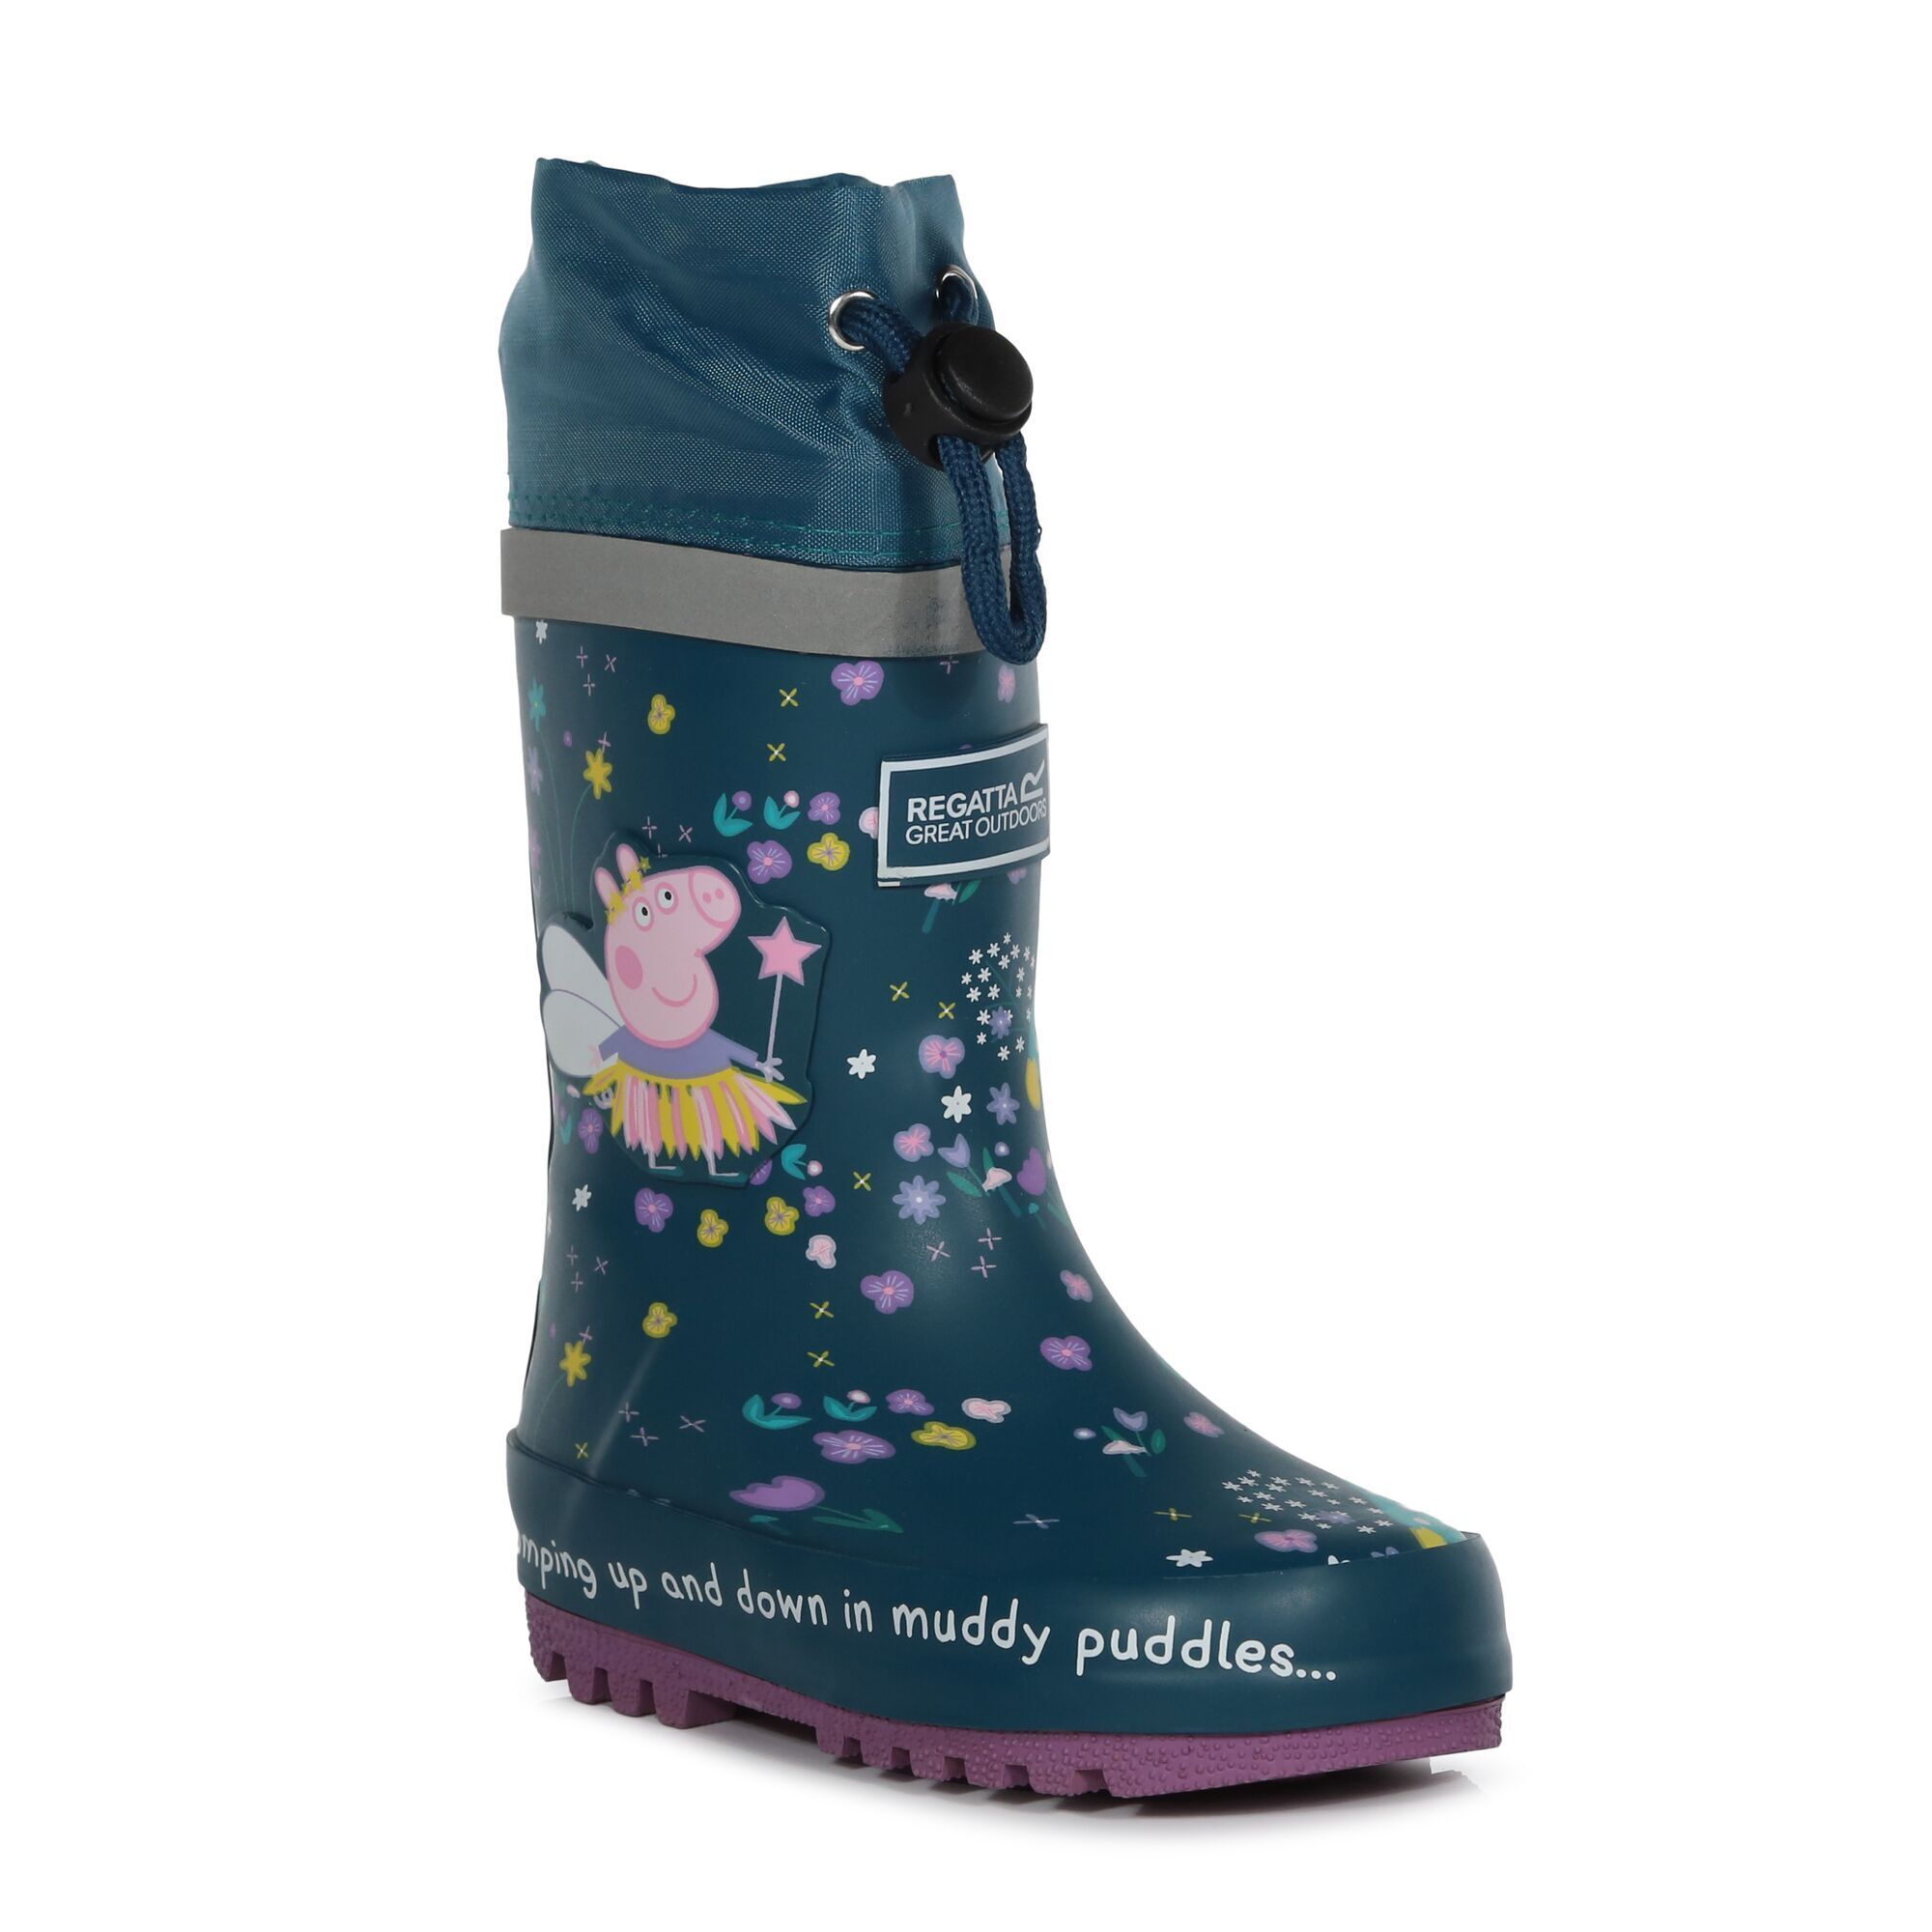 Fantasia Infantil/ Infantil Peppa Pig Splash Wellington Boots Regatta Fantasy